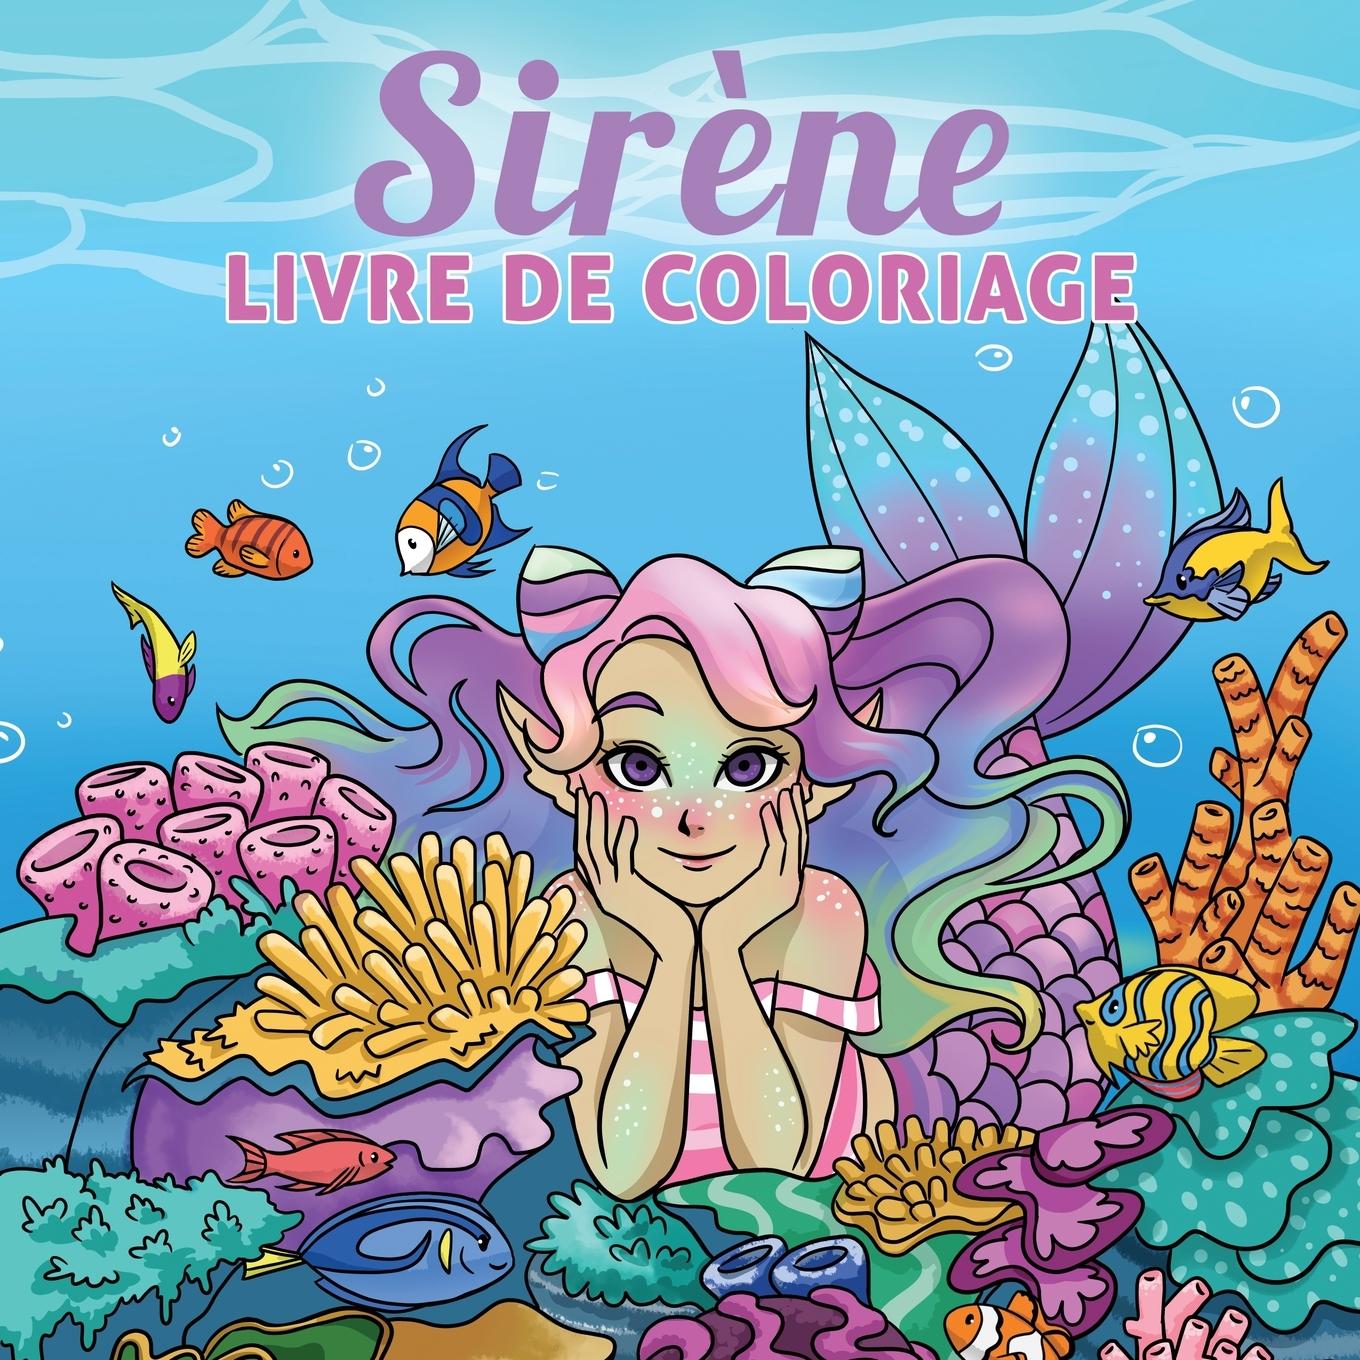 Kniha Sirene livre de coloriage 